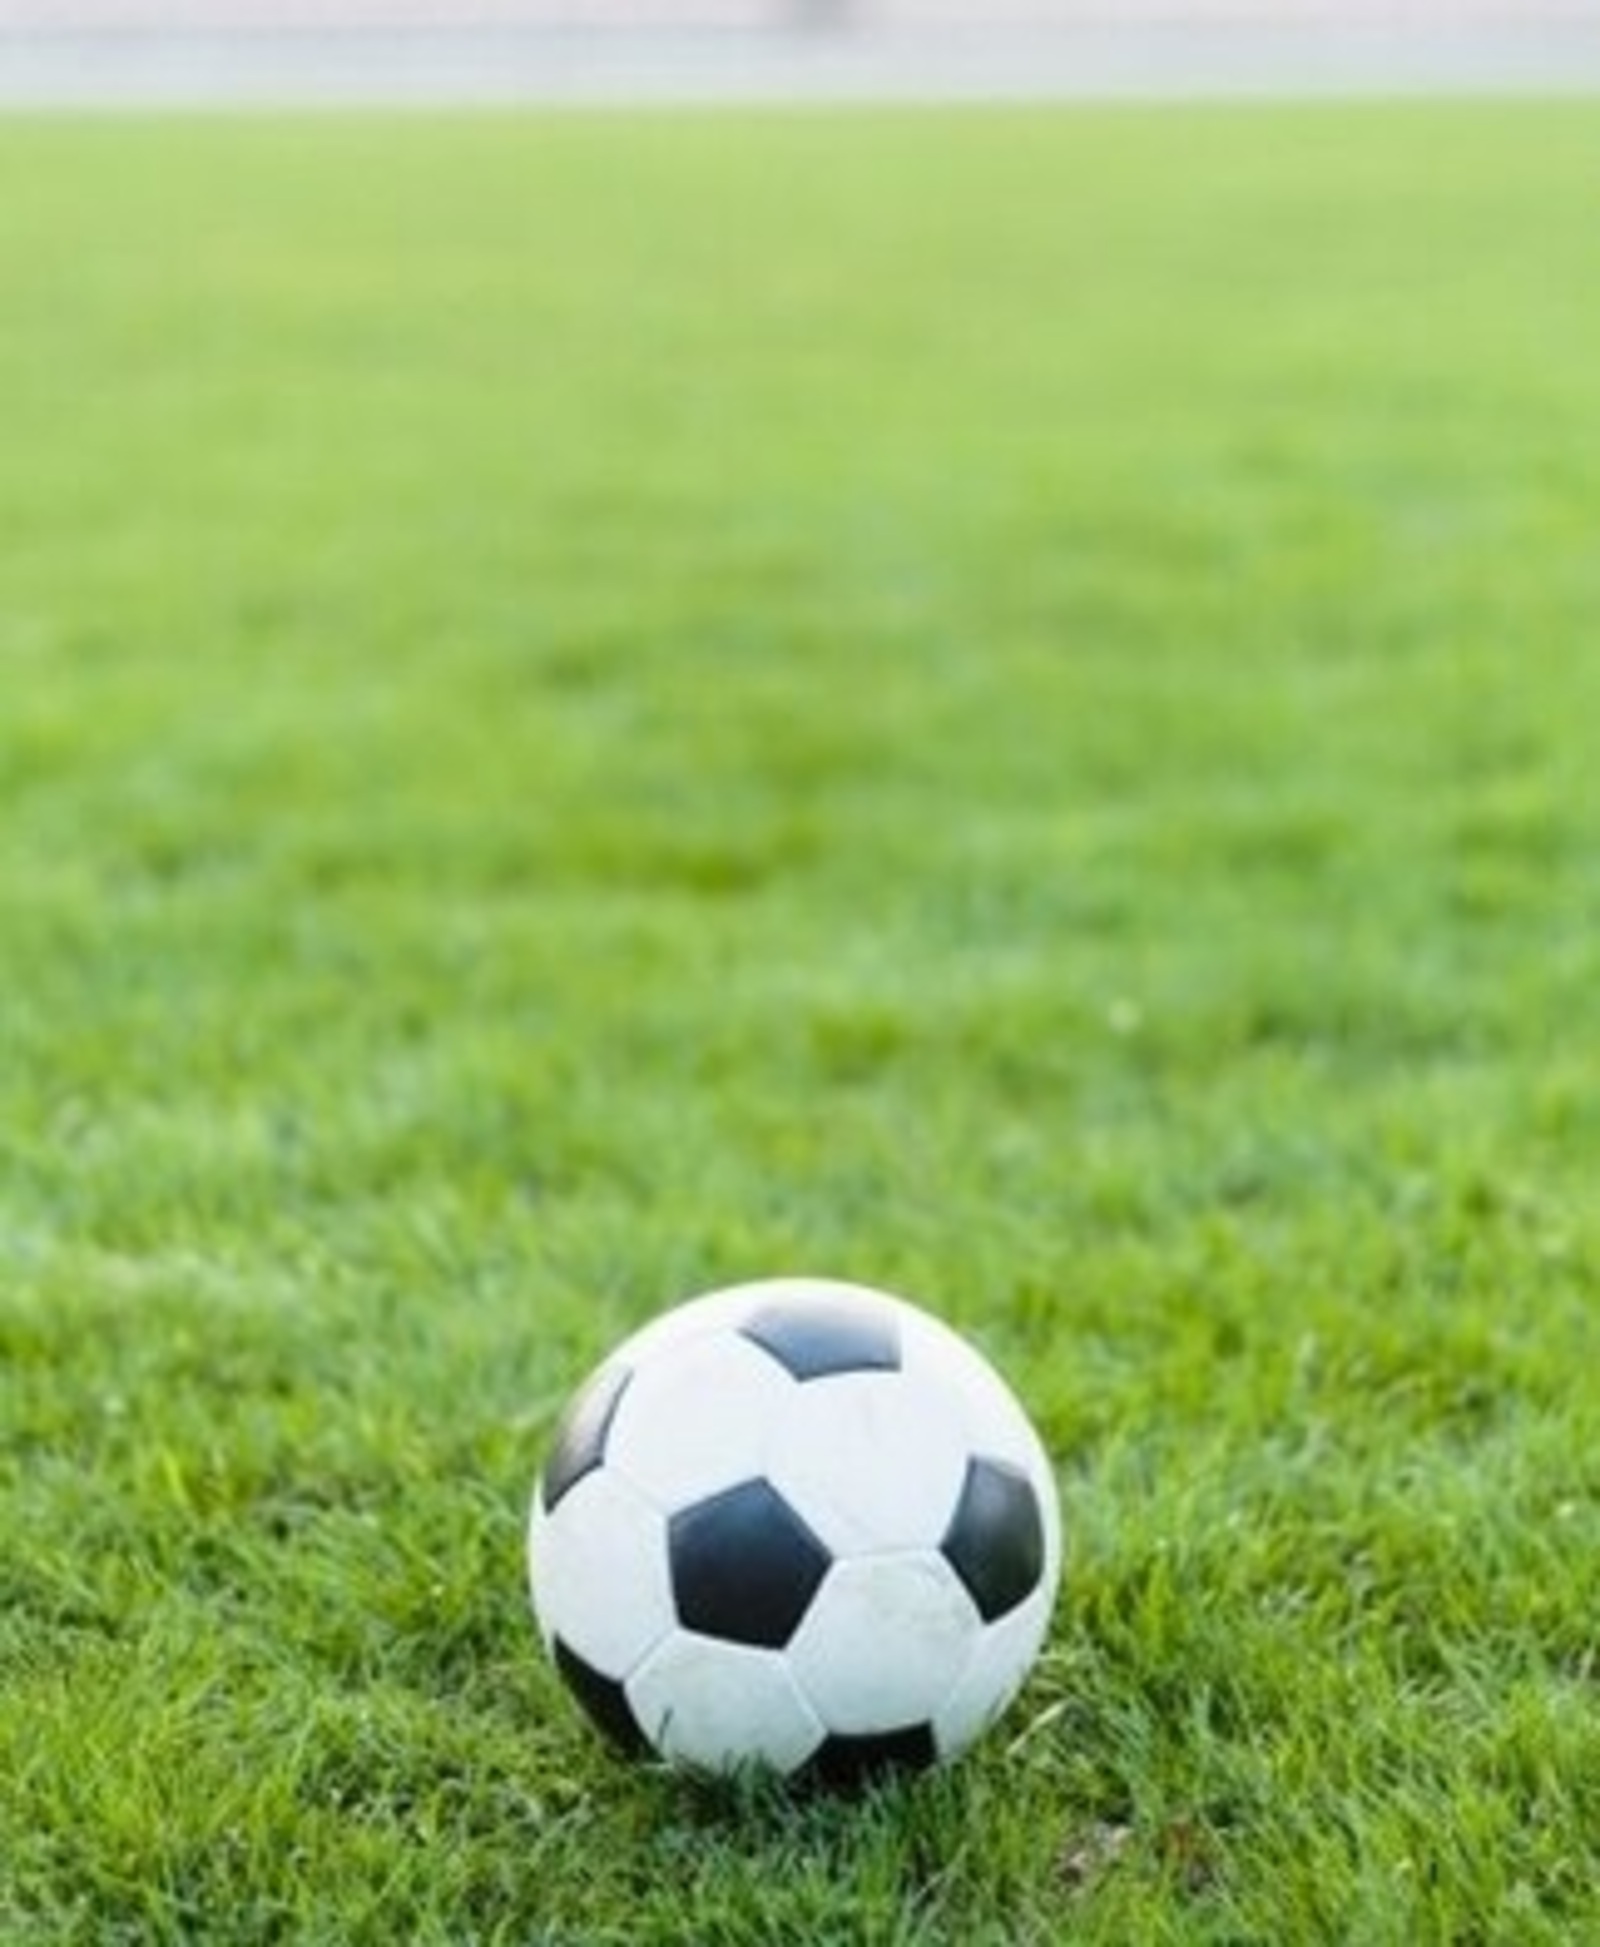 В Башкирии подписан закон о запрете договорных матчей